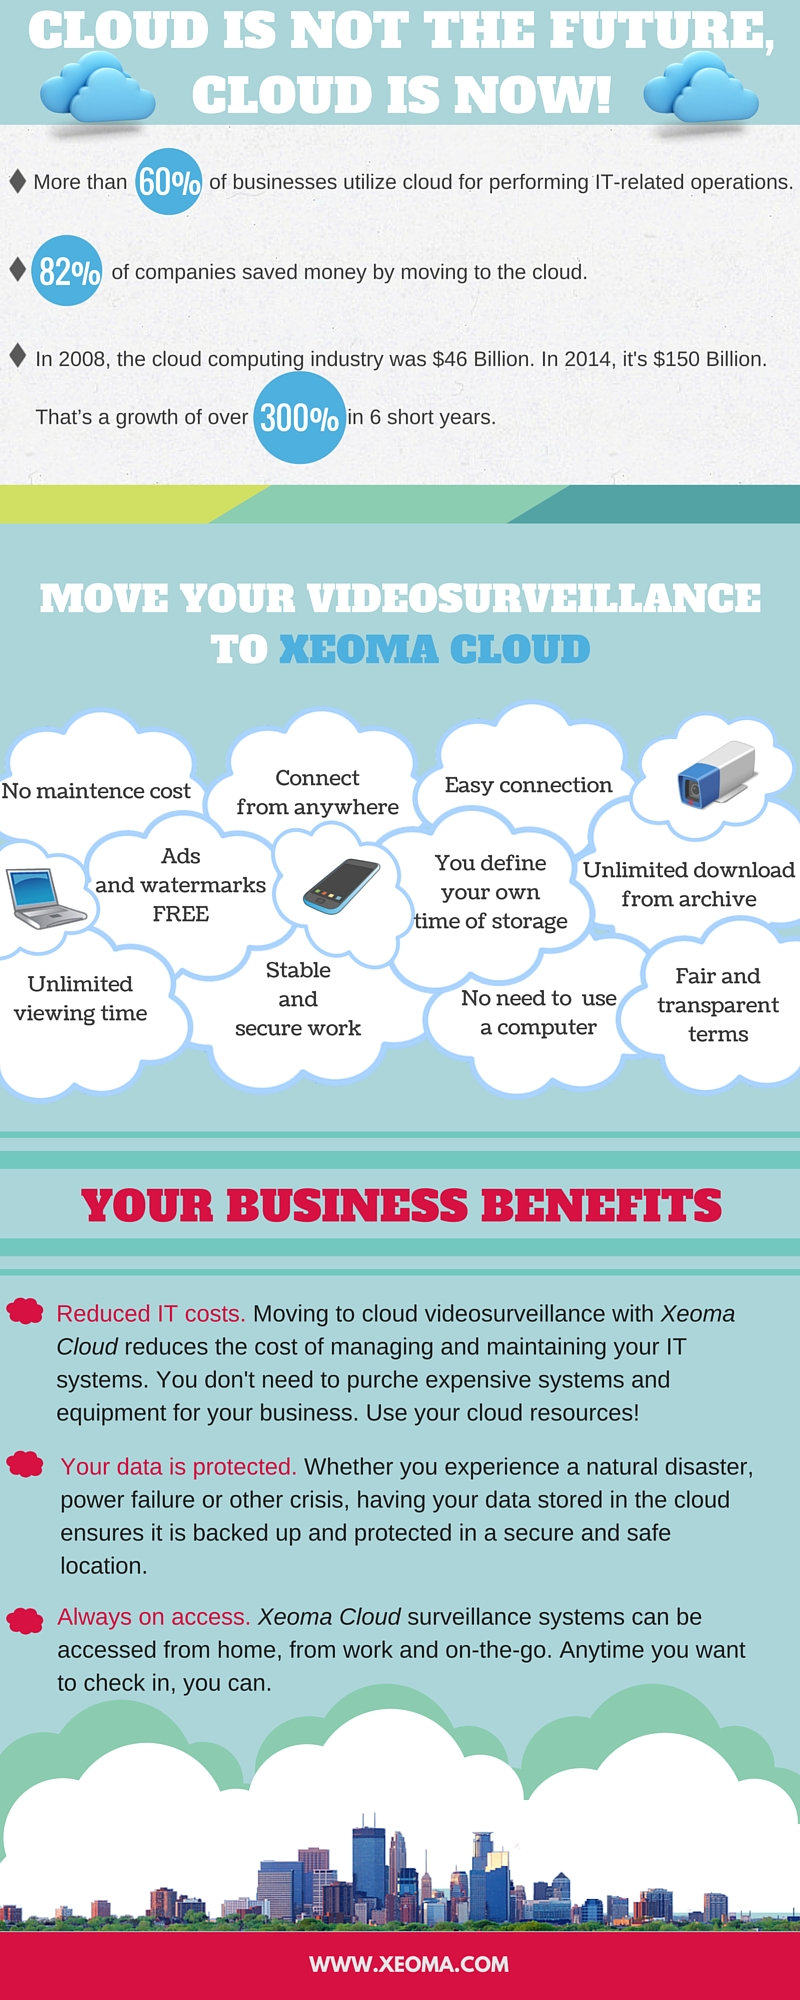 Wie funktioniert die Cloud für Ihr Unternehmen